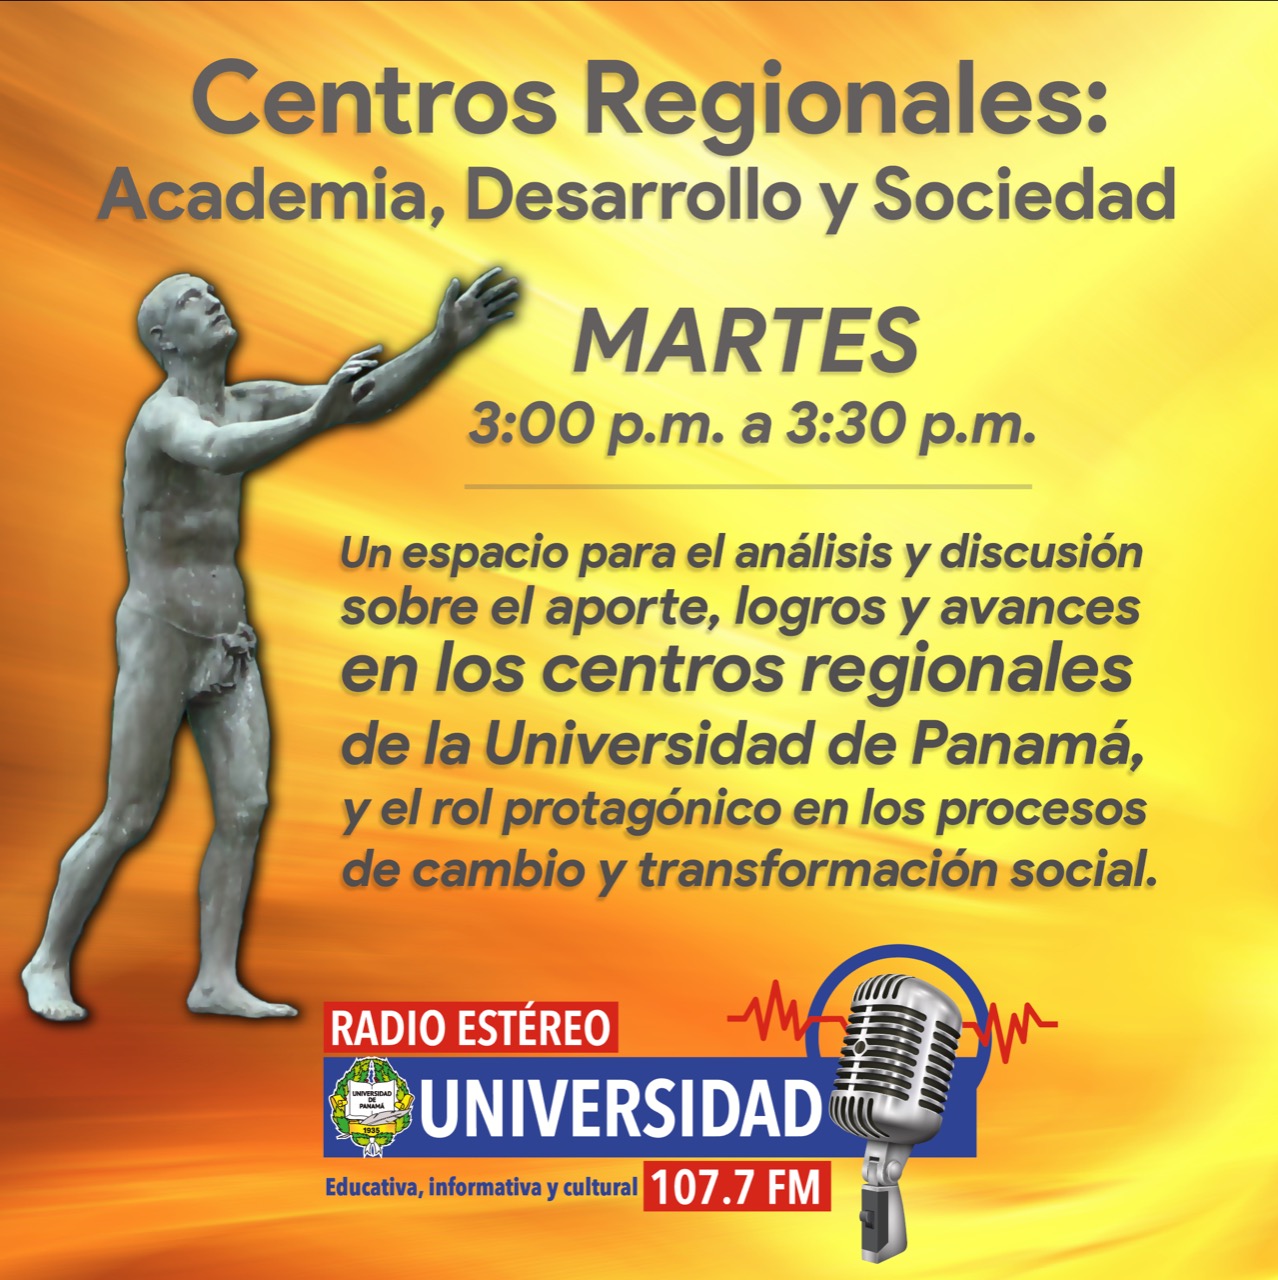 Programa de radio de los Centros Regionales, por Estéreo Universidad 107.7 f.m.  Los martes de 3:00 pm a 3:30 pm